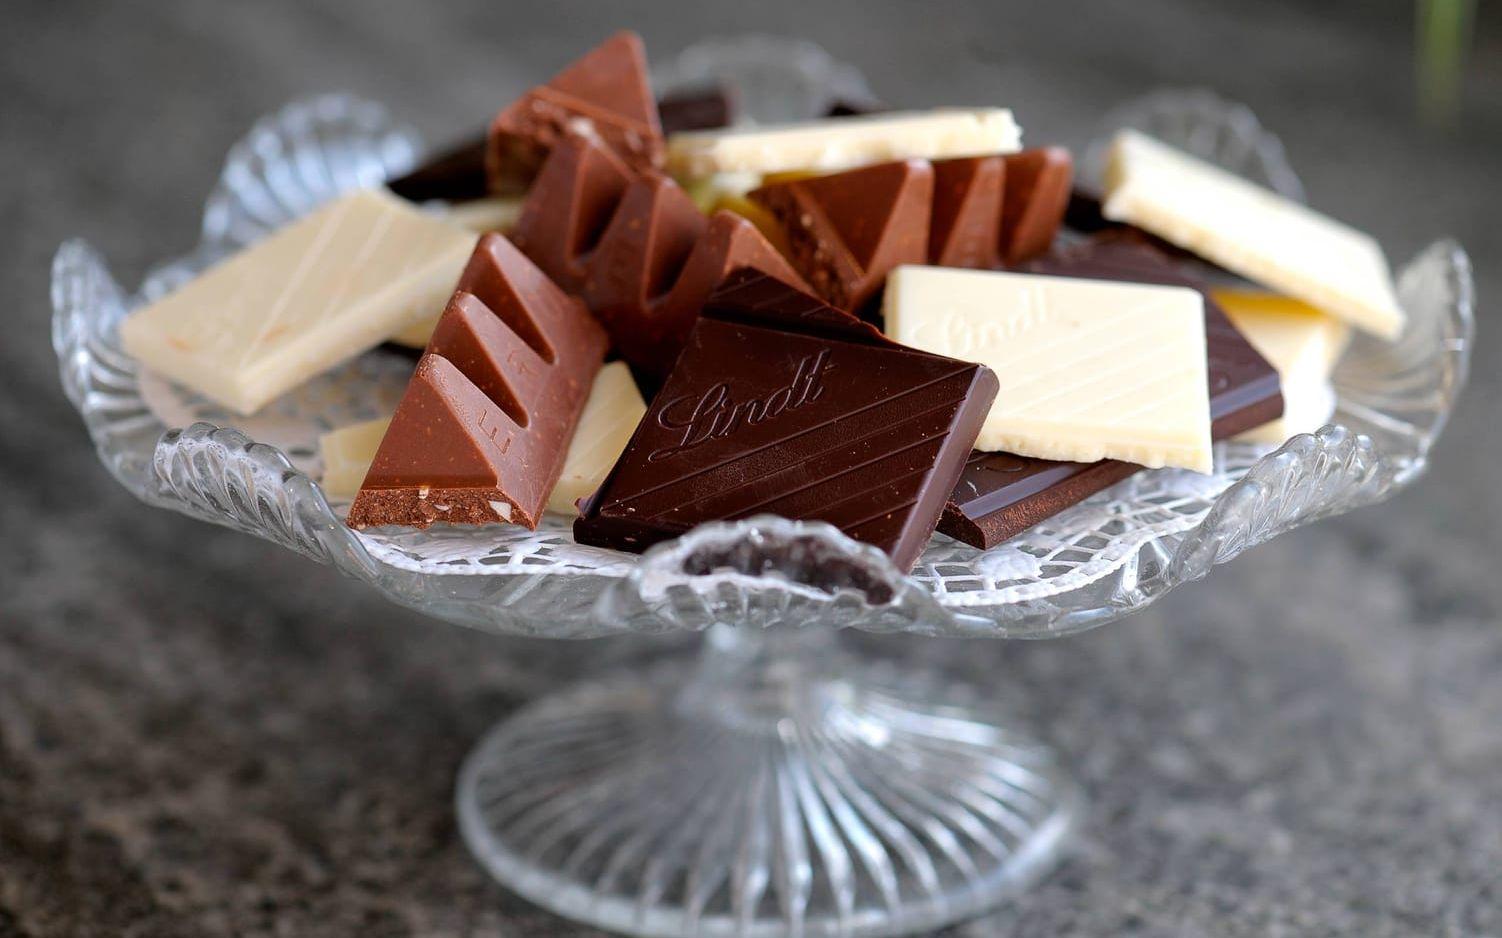 Vit choklad innehåller inte choklad. Den görs på restprodukter av riktig choklad. Bild: TT